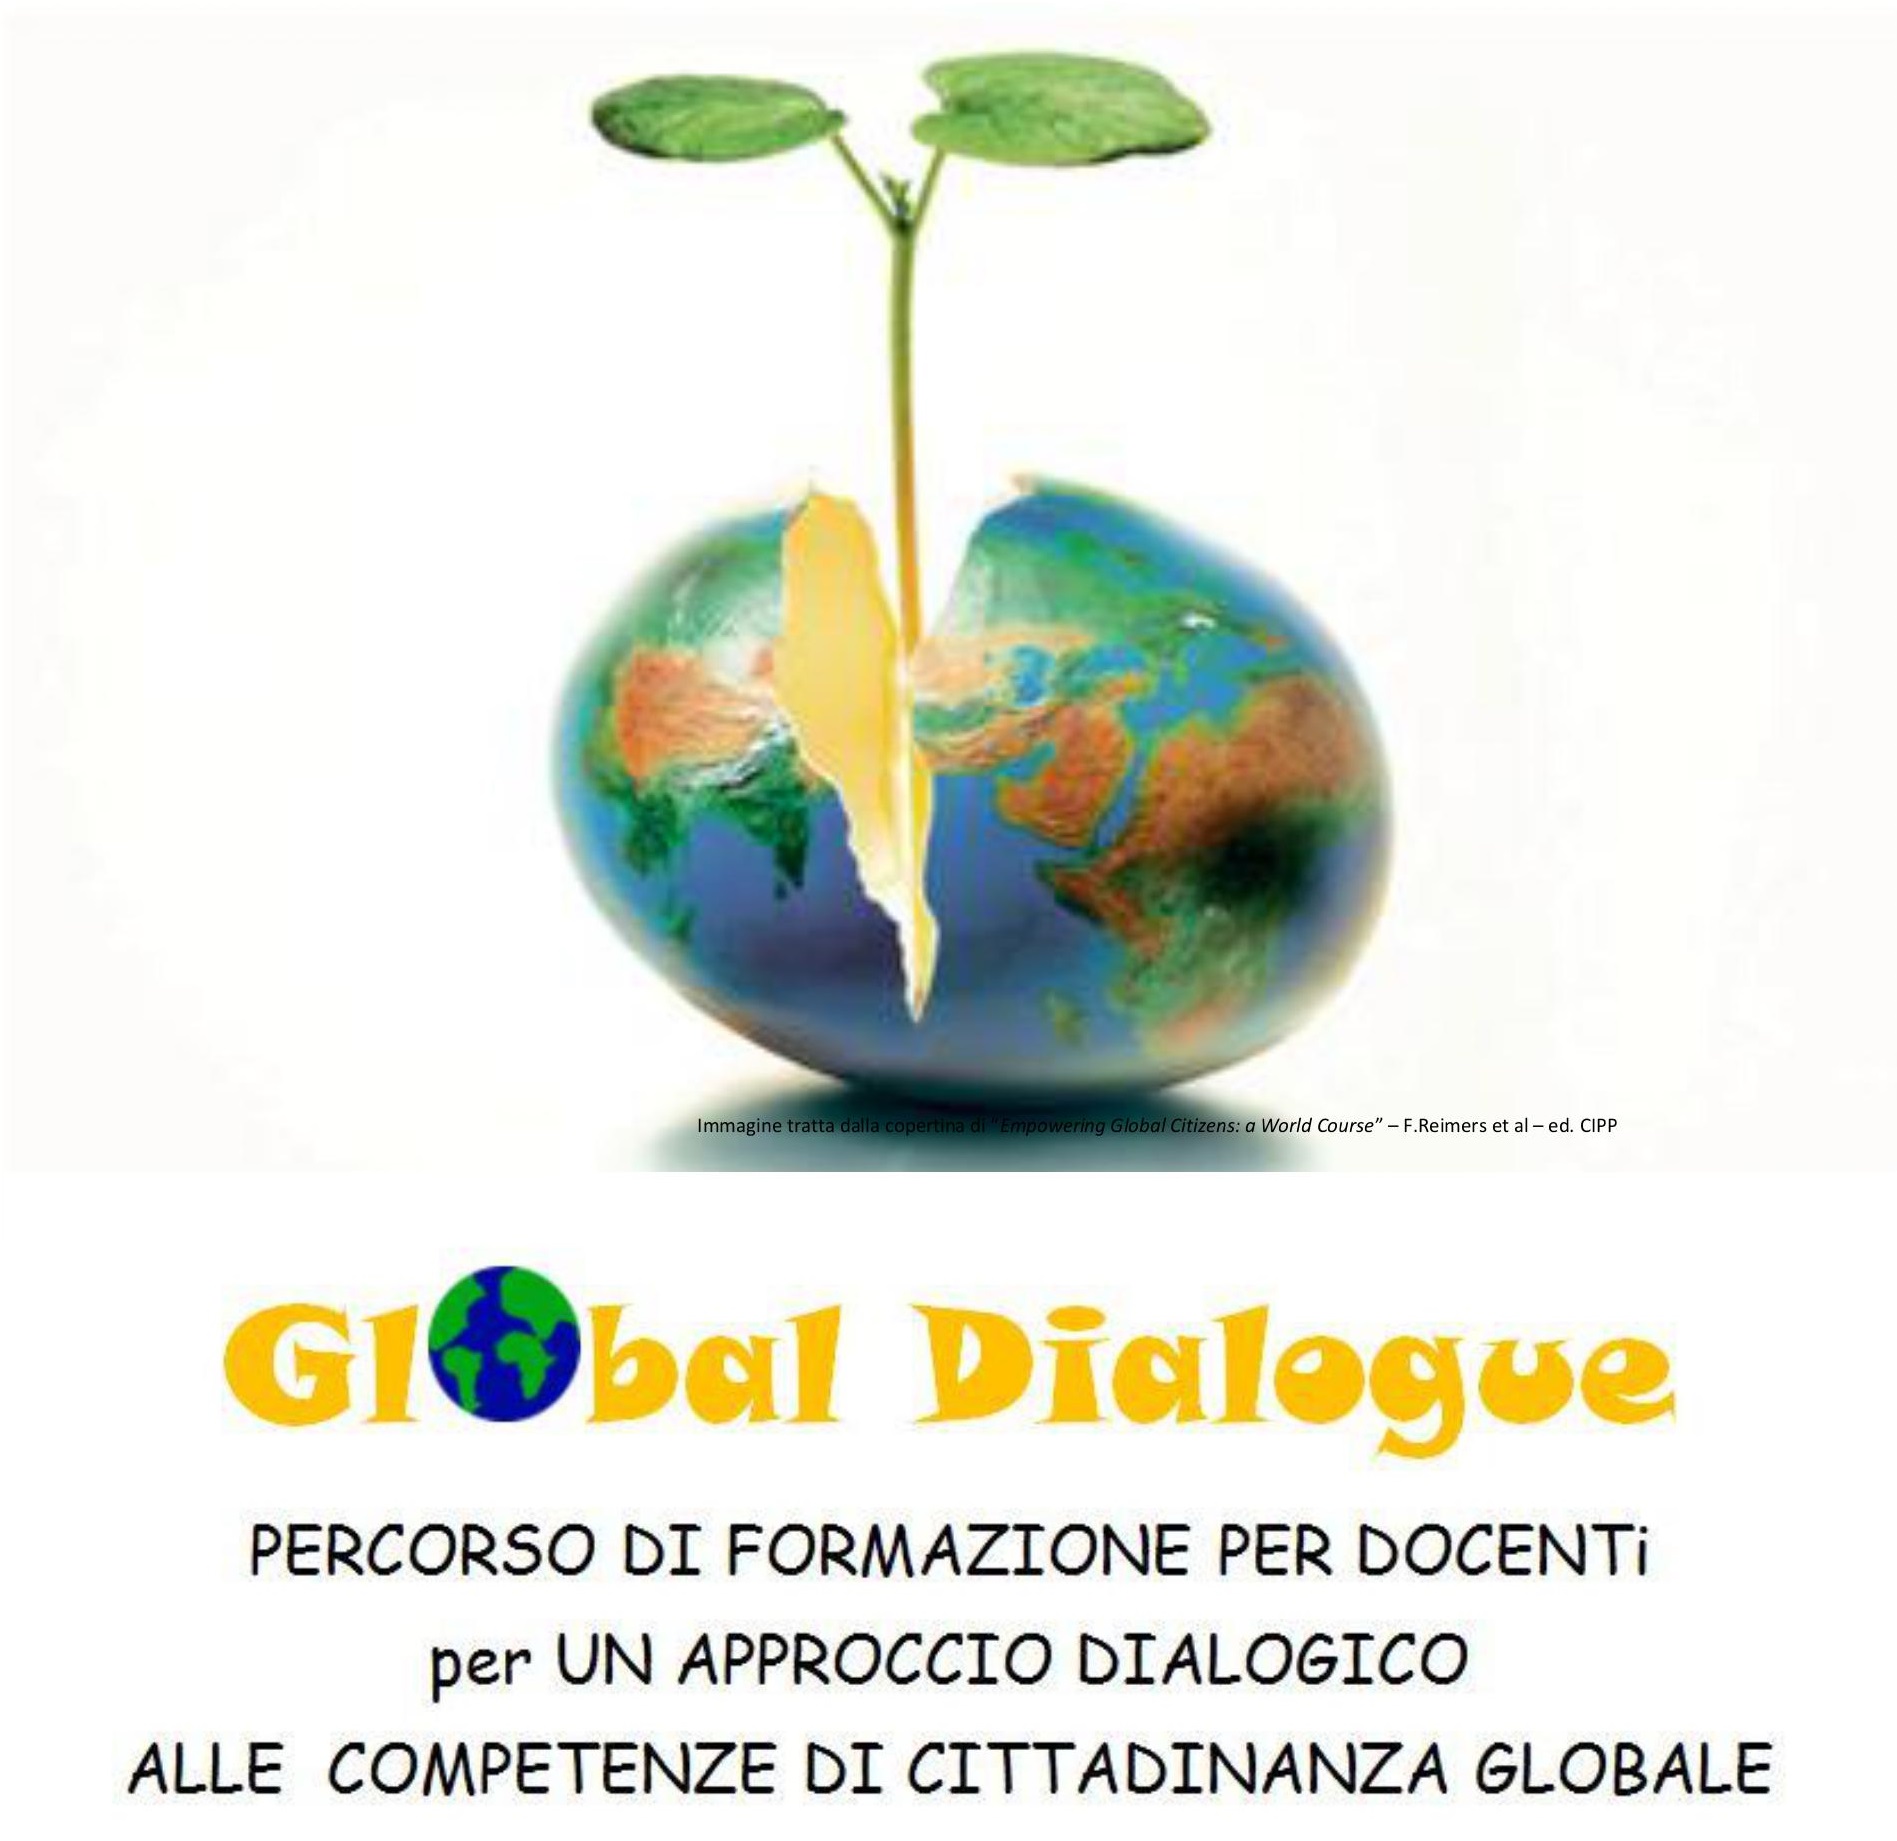 Global Dialogue: percorso di formazione per docenti